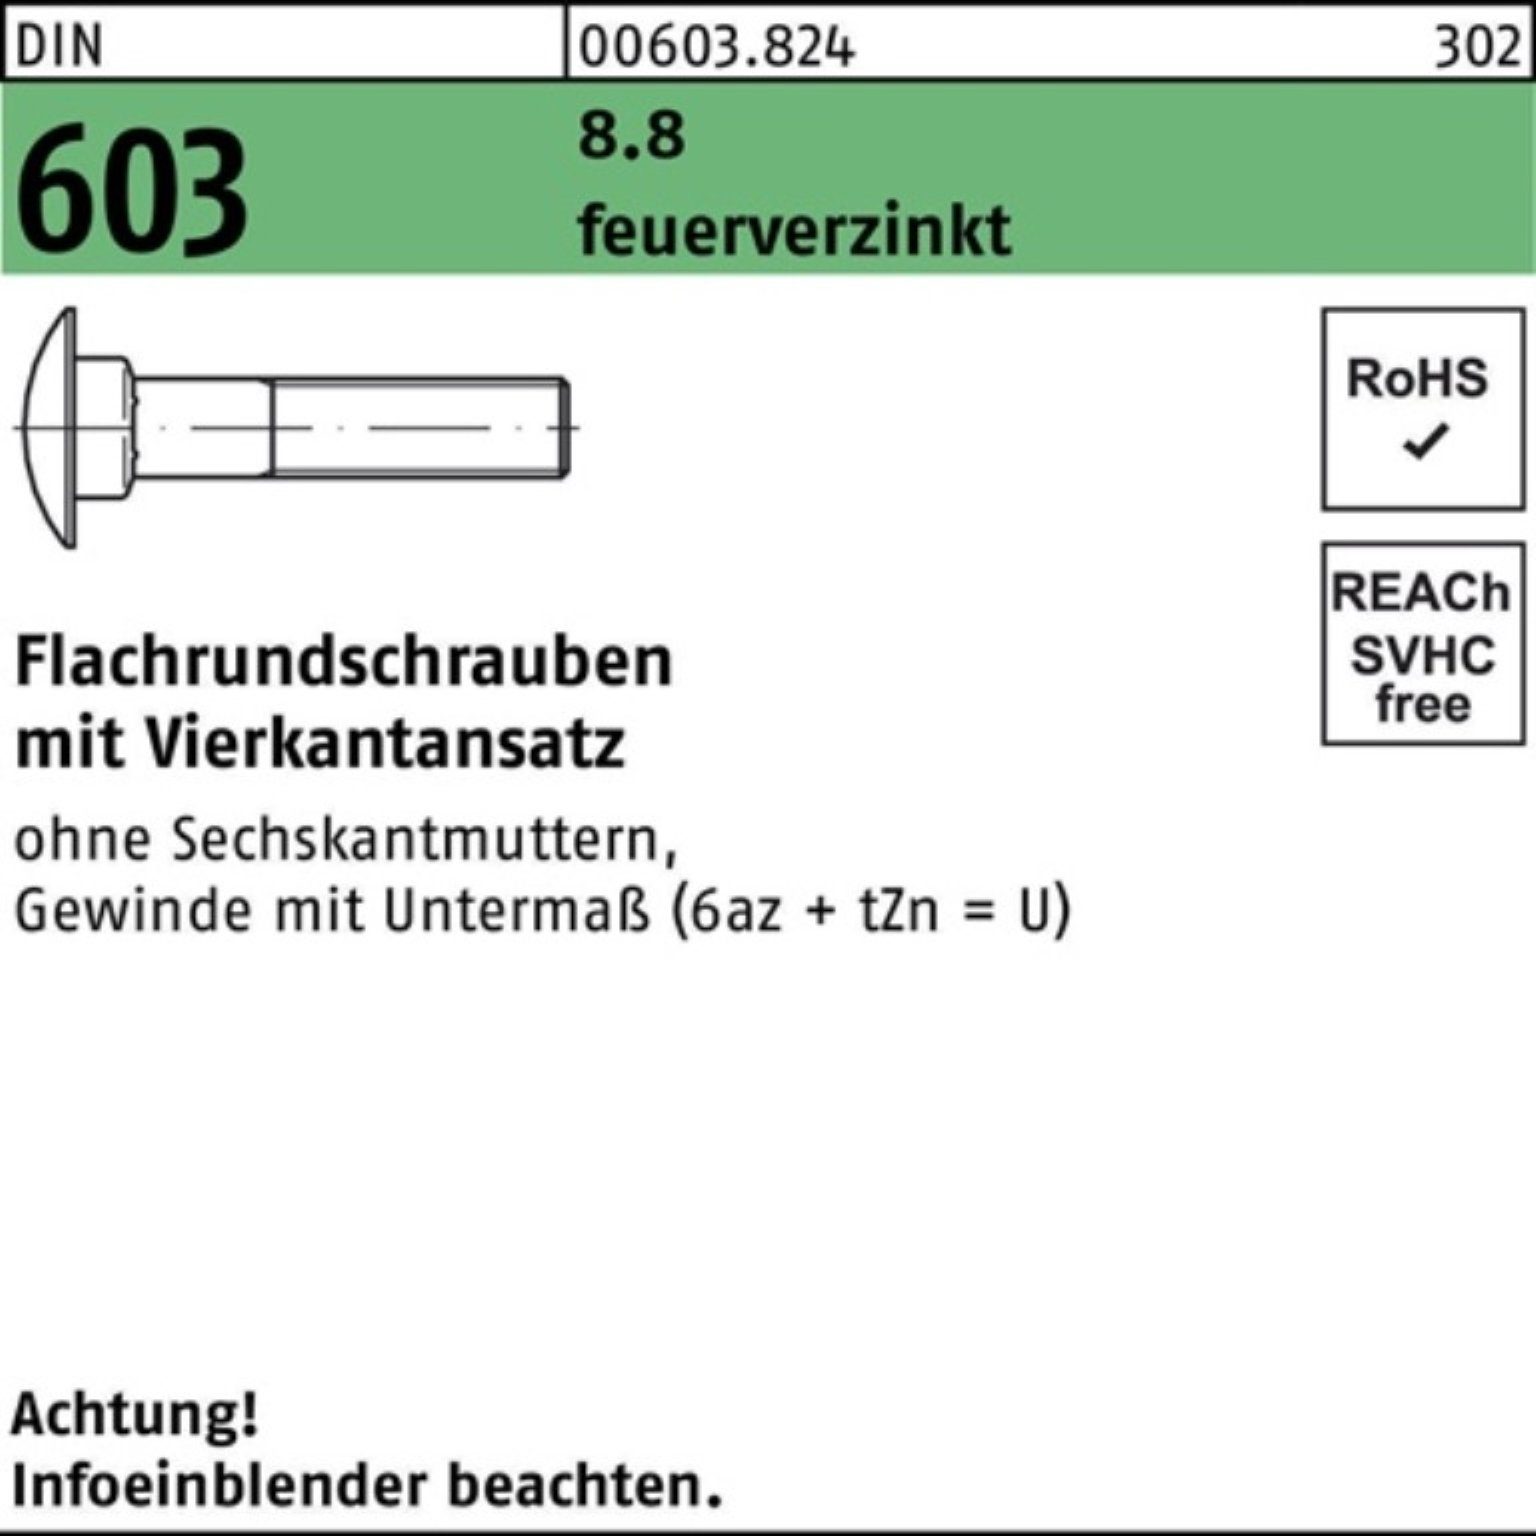 Flachrundschraube 25 Vierkantansatz DIN Pack 603 M10x 100er Reyher 8.8 Schraube feuerv